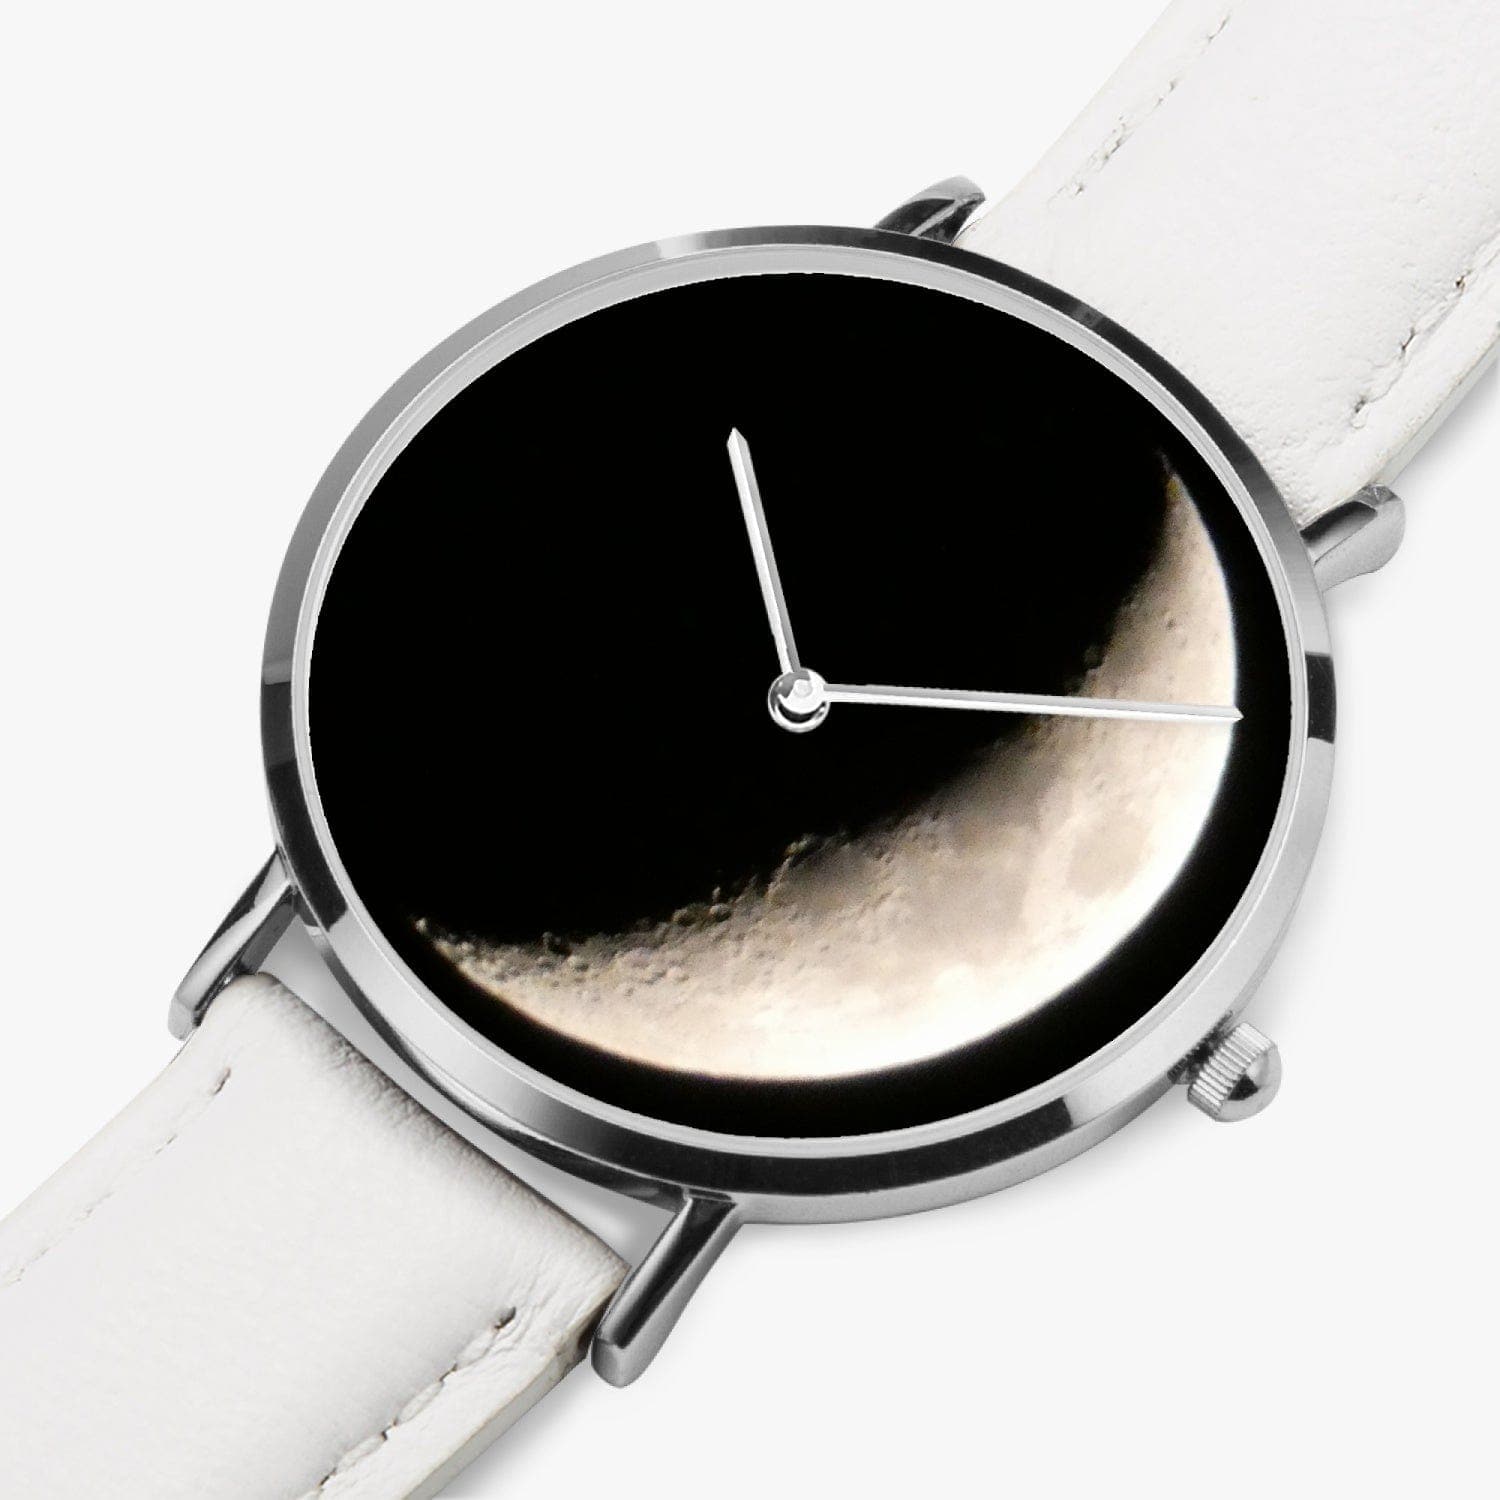 New Moon. Ultra-Thin Leather Strap Quartz Watch (Silver). Designer watch by Ingrid Hüttten